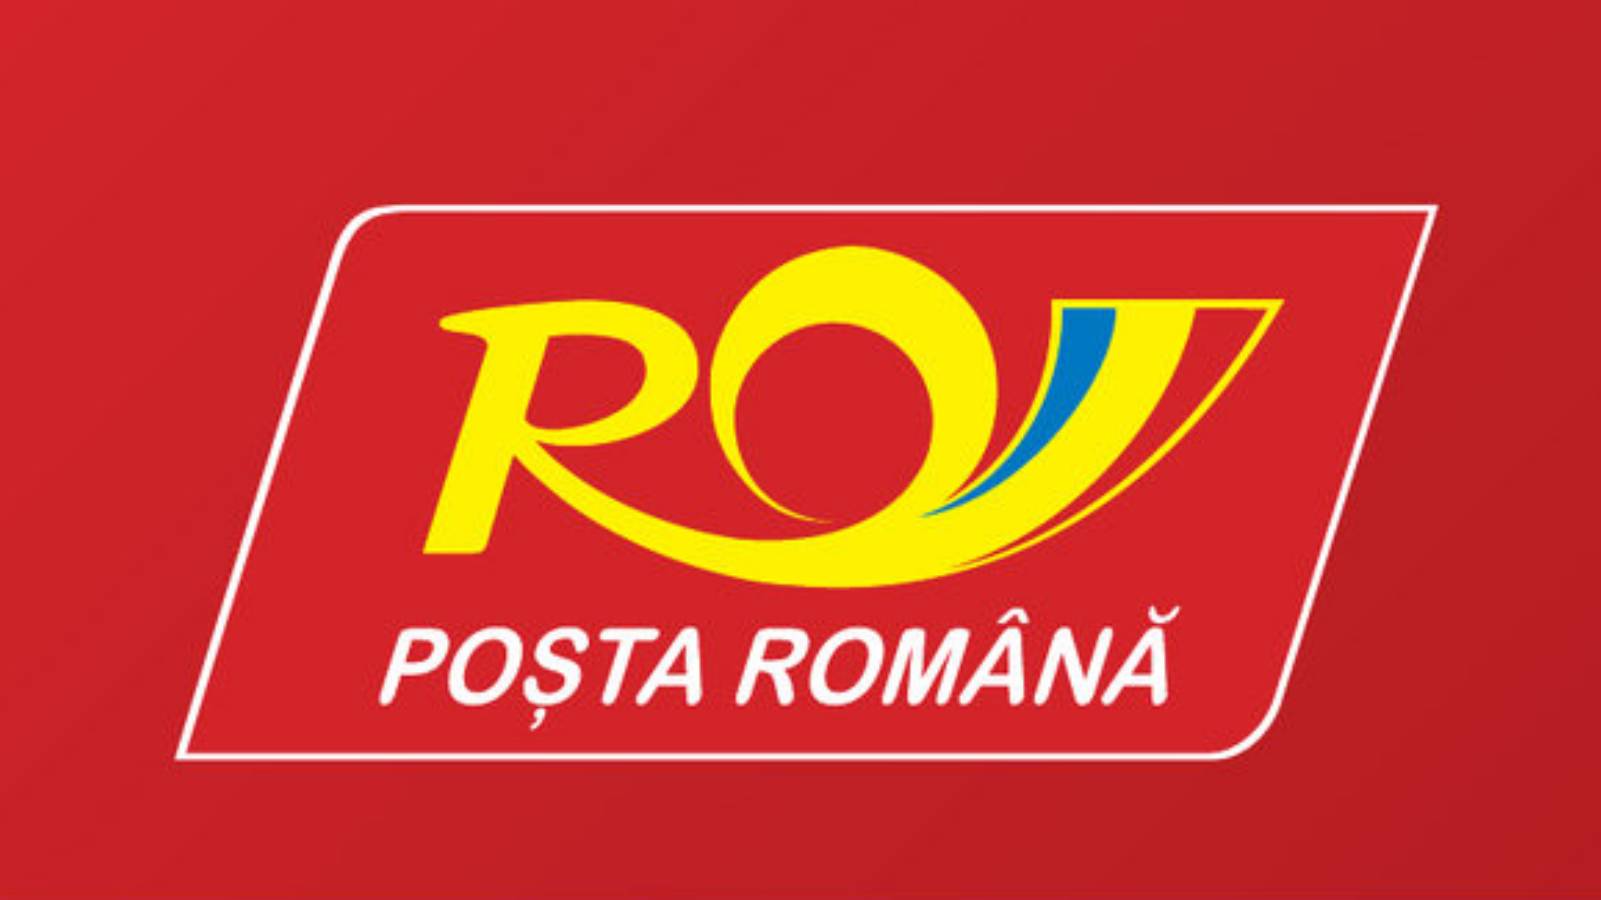 El mensaje del Correo rumano Rovinia